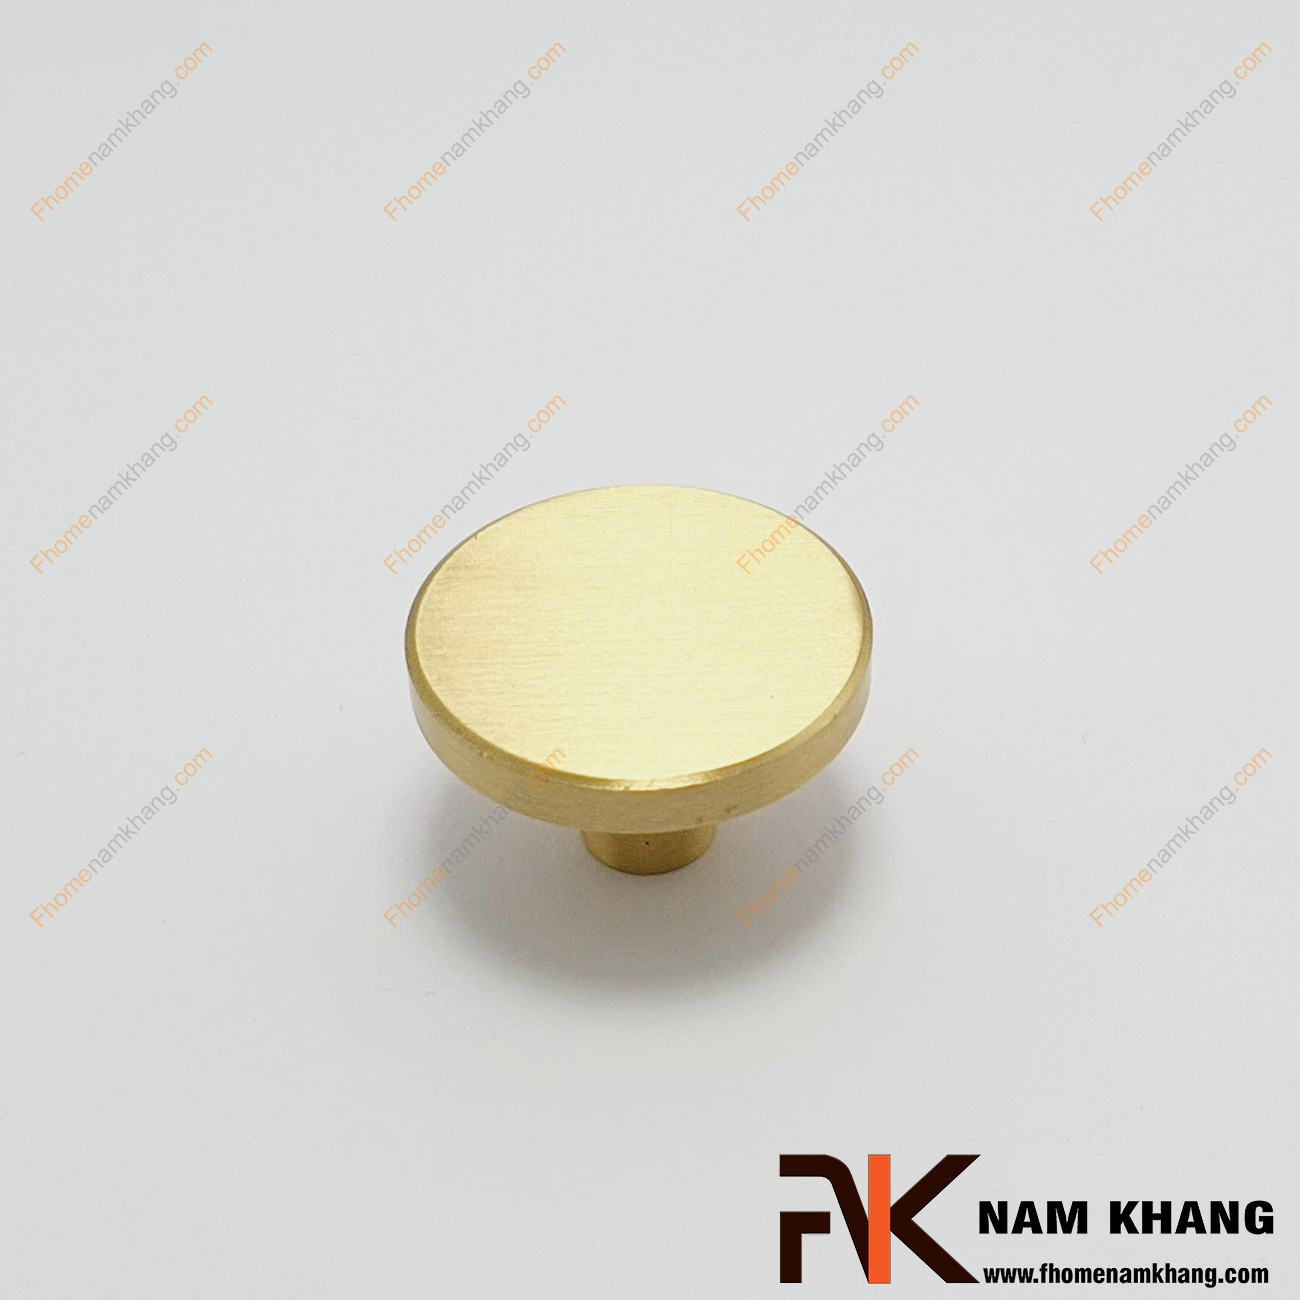 Núm cửa tủ bằng đồng NK455-DV, dạng núm cửa tủ tròn chất lượng từ đồng cao cấp nổi bật khi phối hợp trong không gian nội ngoại thất.